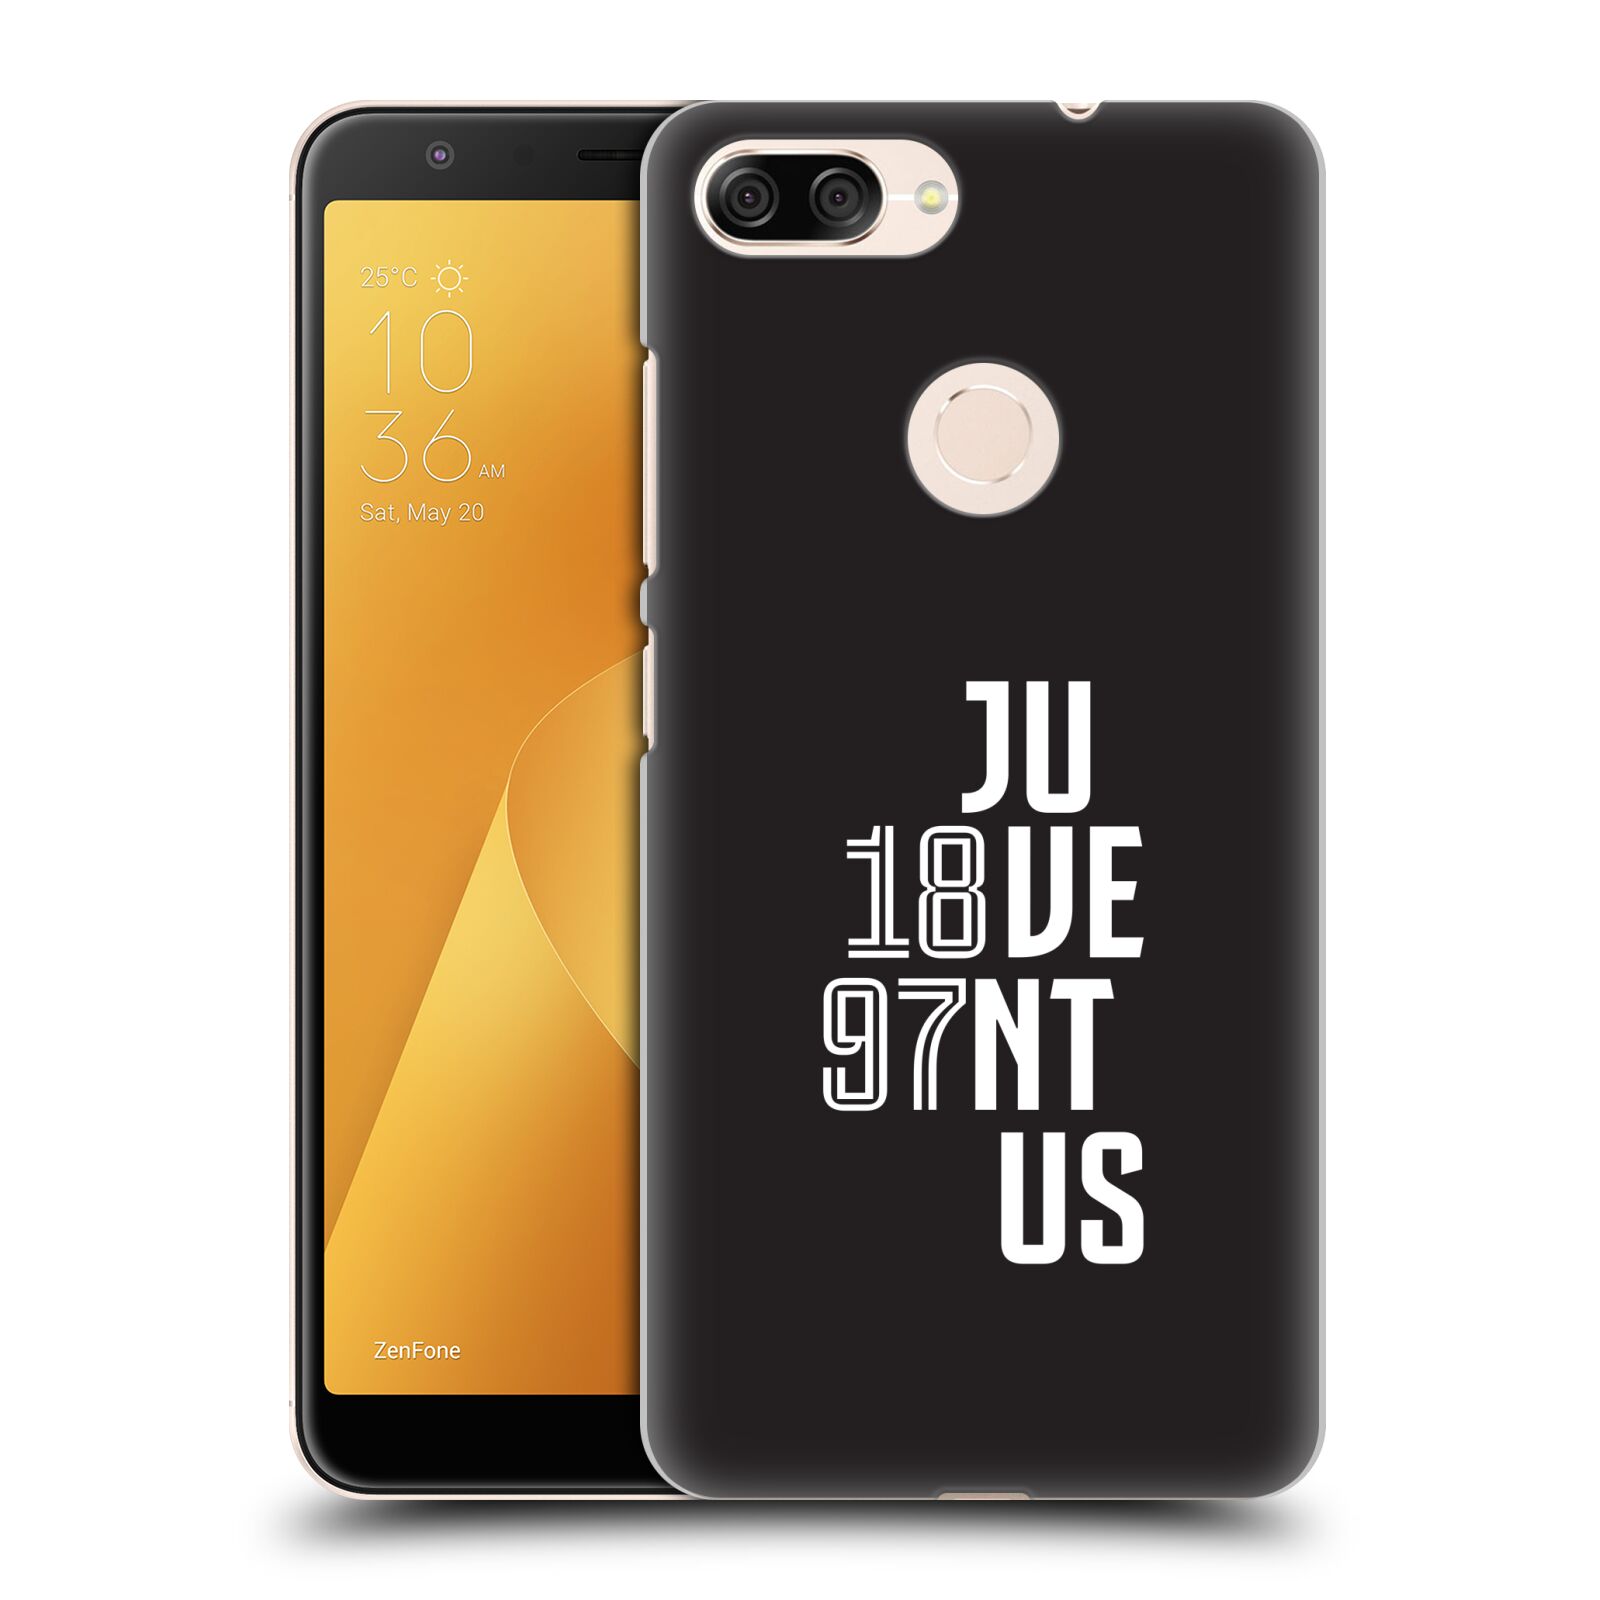 Zadní obal pro mobil Asus Zenfone Max Plus (M1) - HEAD CASE - Fotbalový klub Juventus - Velké písmo